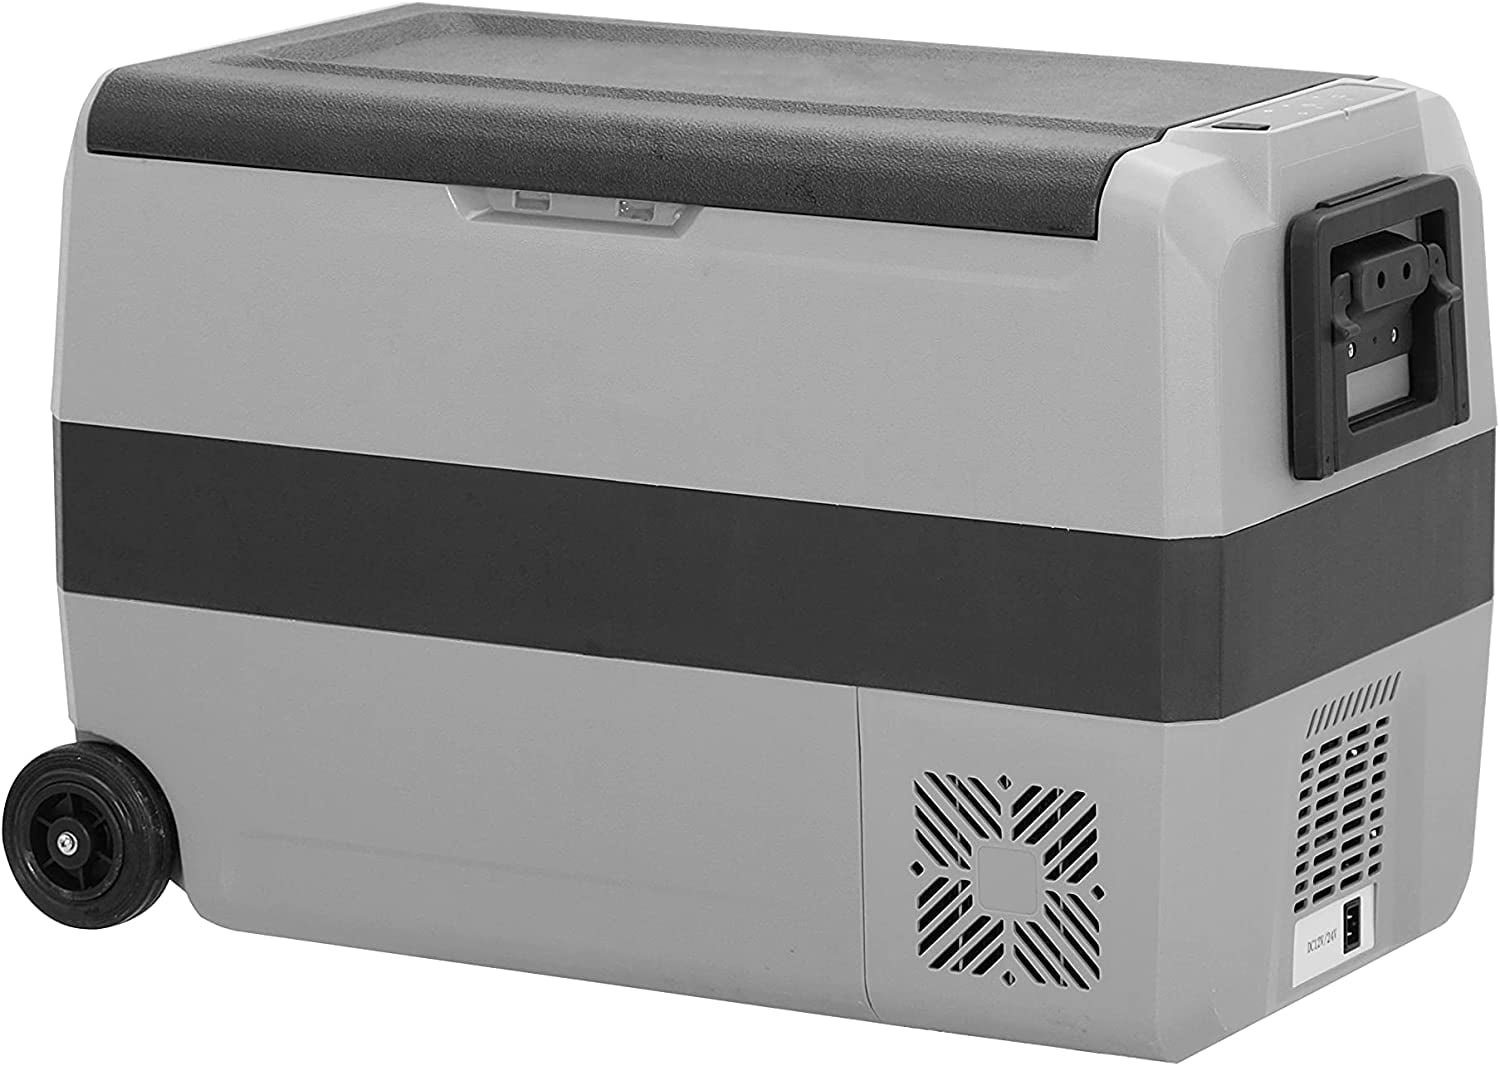 Alpicool Cooling Box 50L - Cool Box